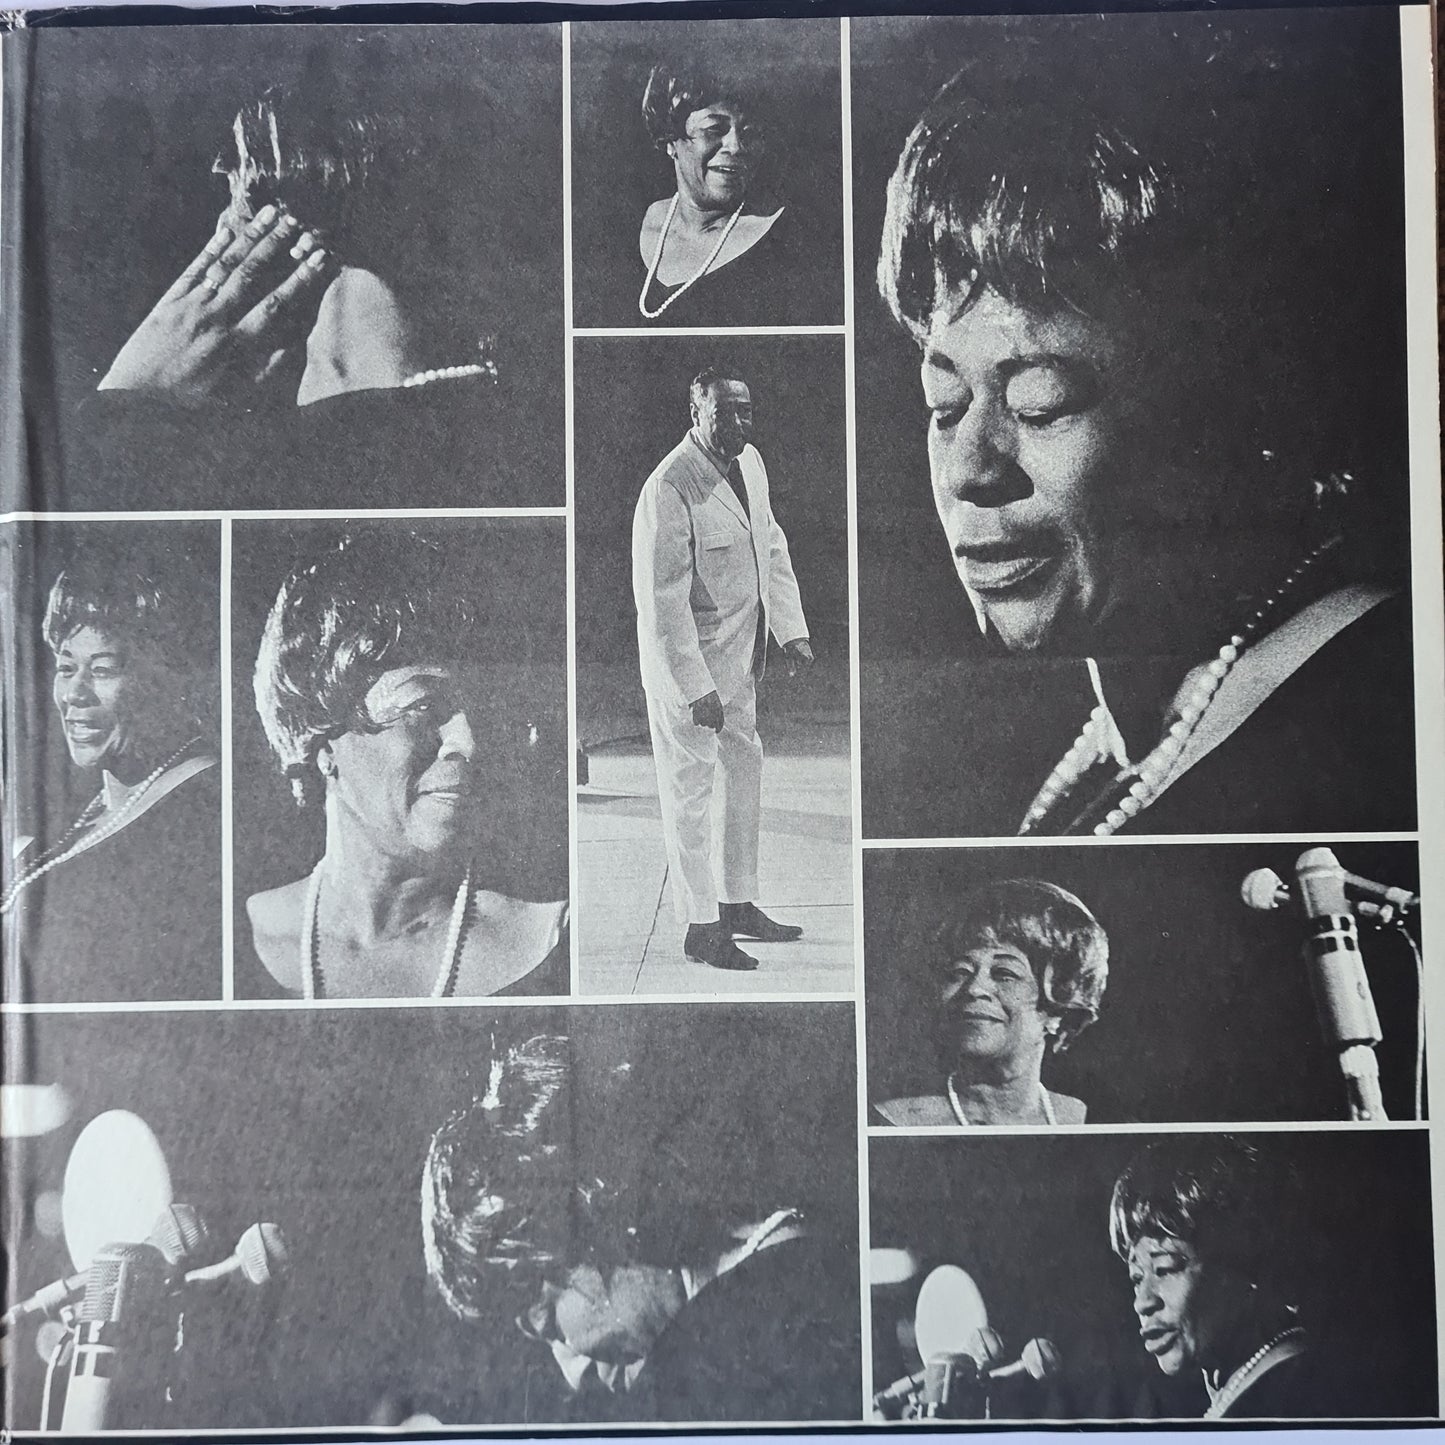 Ella Fitzgerald & Duke Ellington – Ella & Duke At The Côte D'Azur - 1967 Pressing (2LP) - Vinyl Record